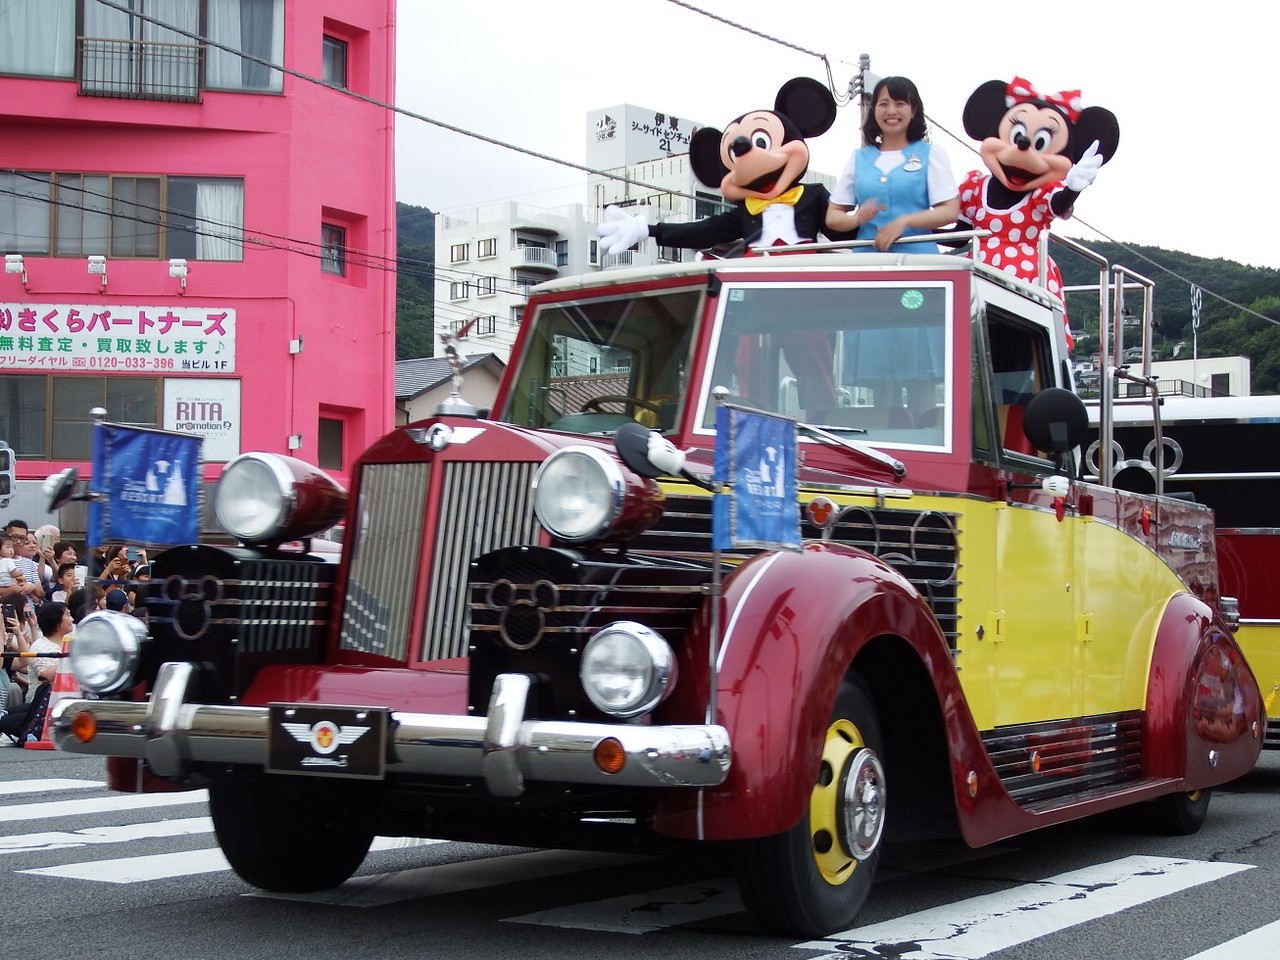 雑記 今年も全国各地でディズニーパレード開催中 まもなく静岡県沼津市でも開催 Keisuke Gensoのホール ニュー ワールド